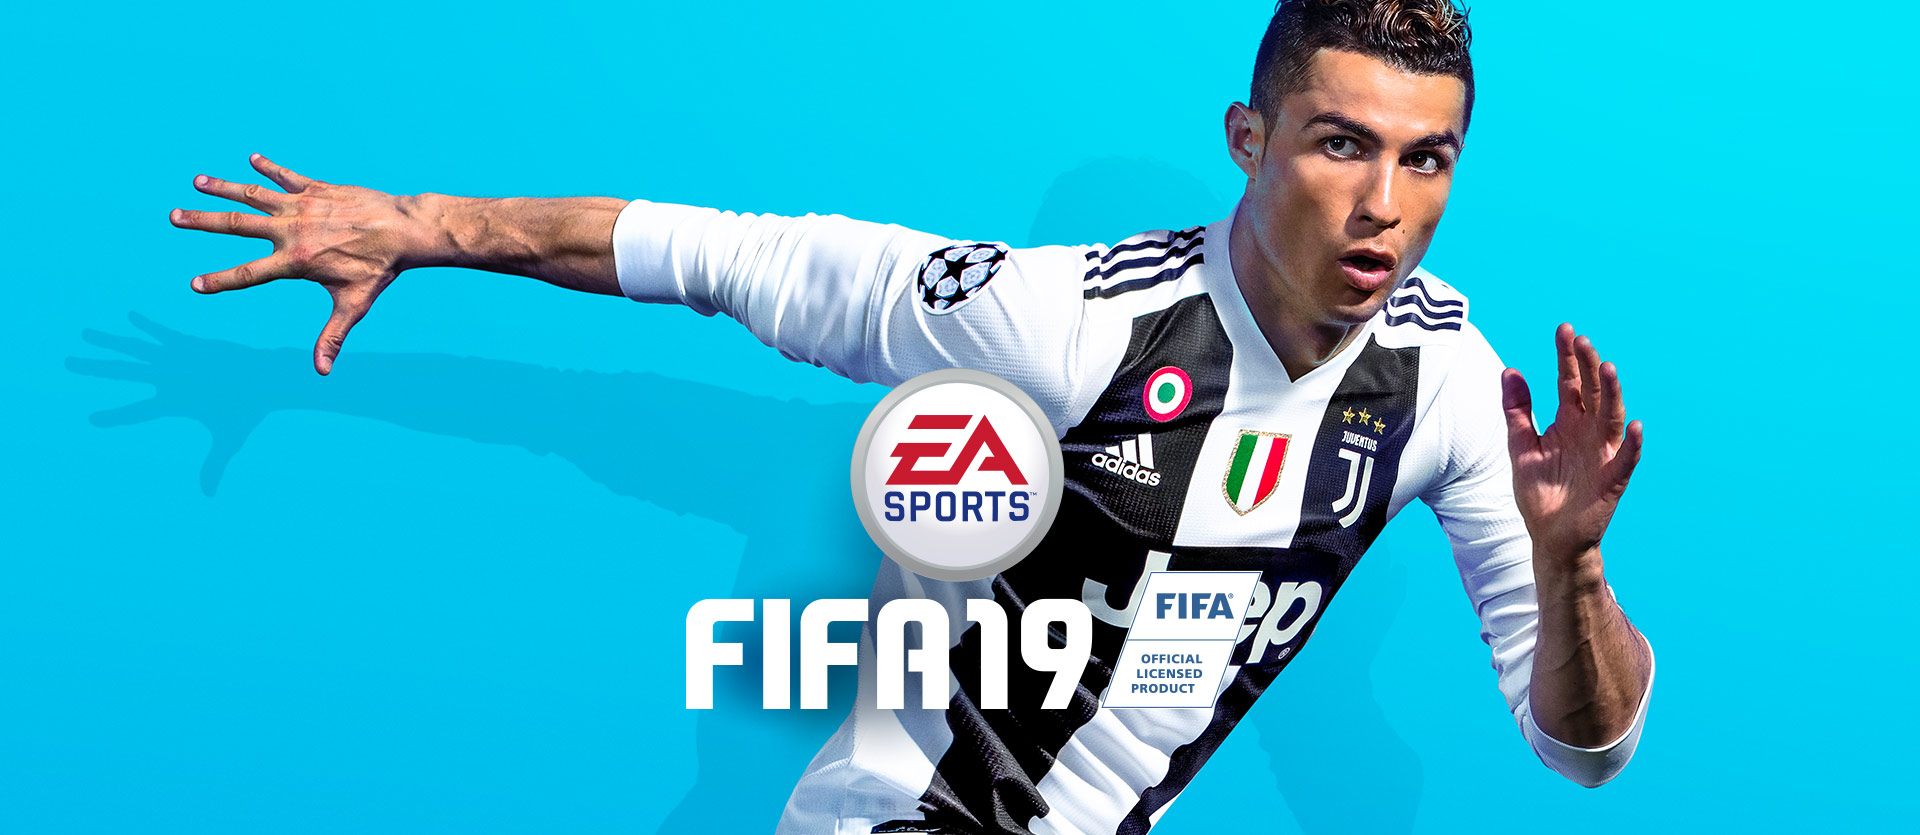 EA hace público el soundtrack de FIFA 19. Cusica Plus.